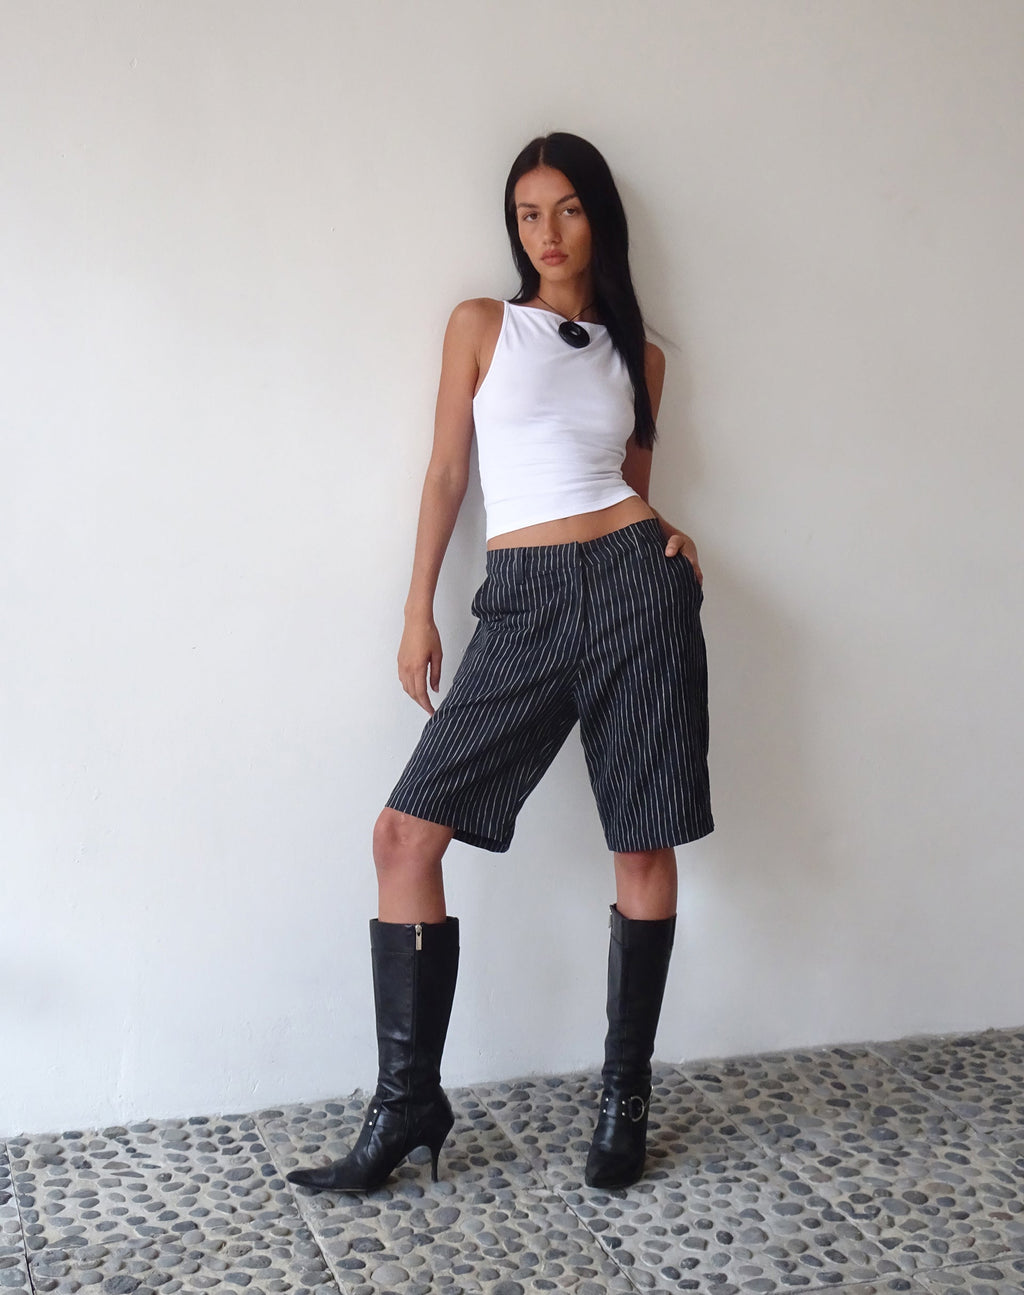 MOTEL X JACQUIE Tabaru Longline Shorts in Sketchy Stripe Black